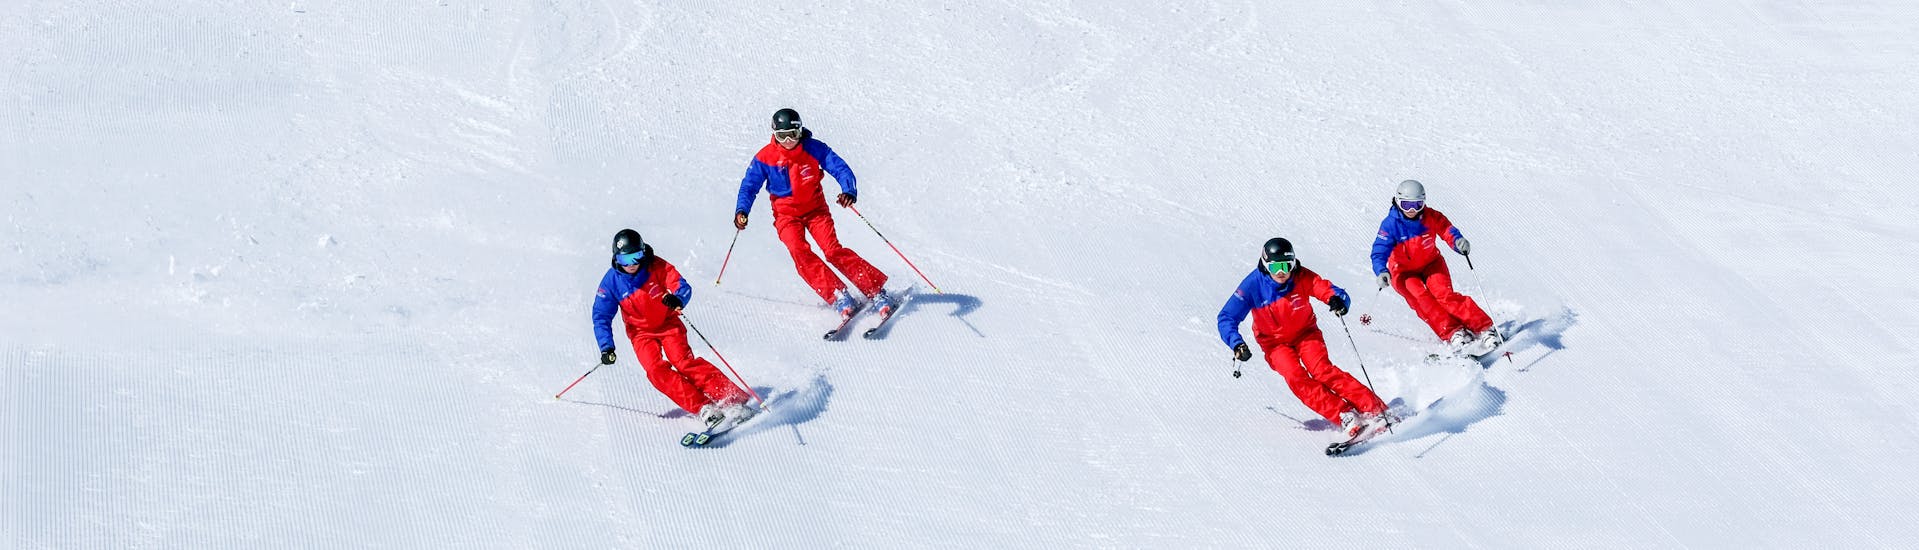 Tieners luisteren naar de skileraar in de skicursus voor tieners (14-17 jaar) - gevorderden.